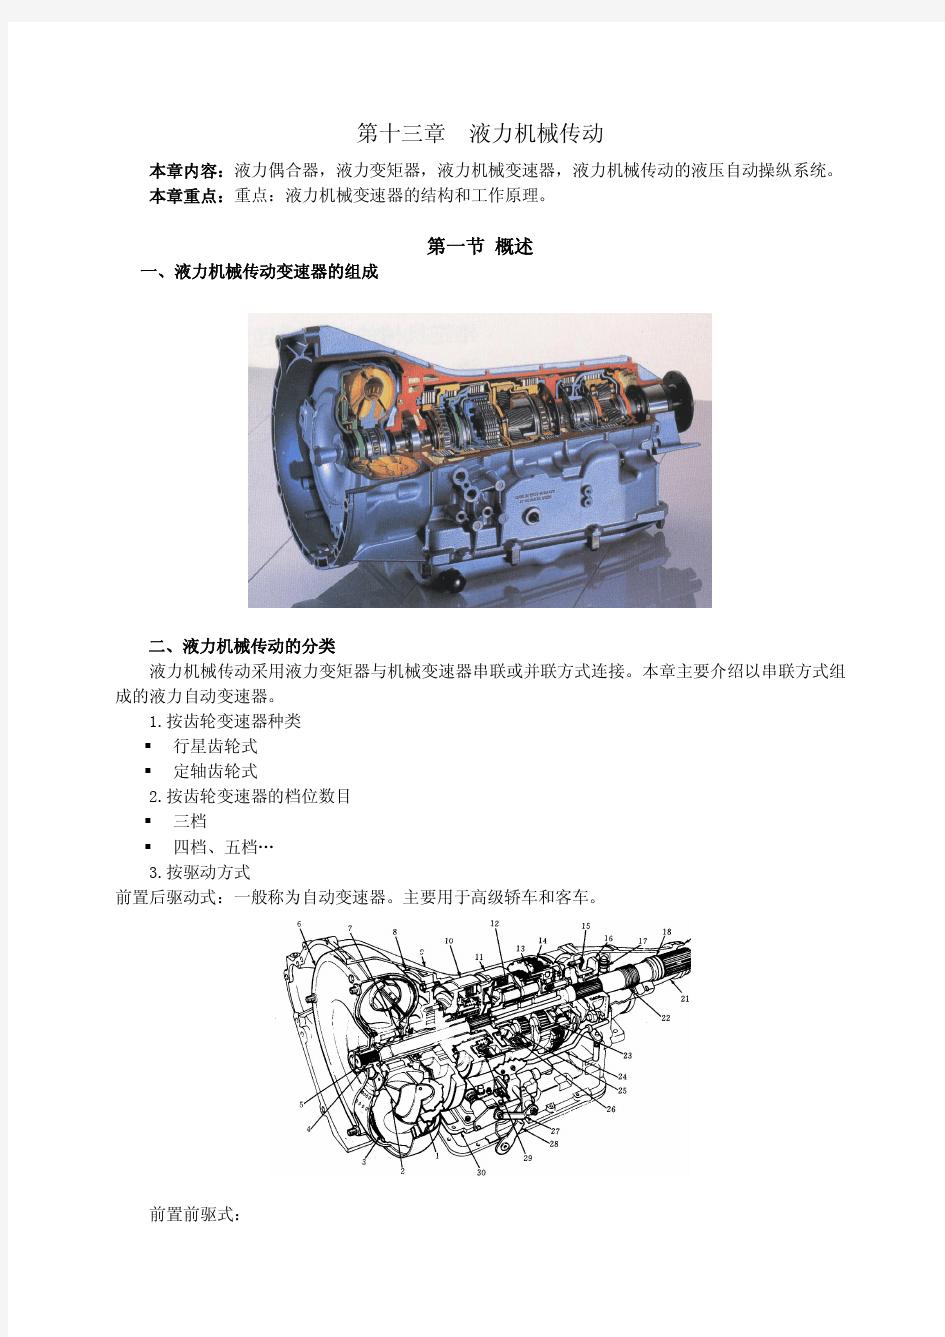 《汽车构造》-电子教案pdf(下)